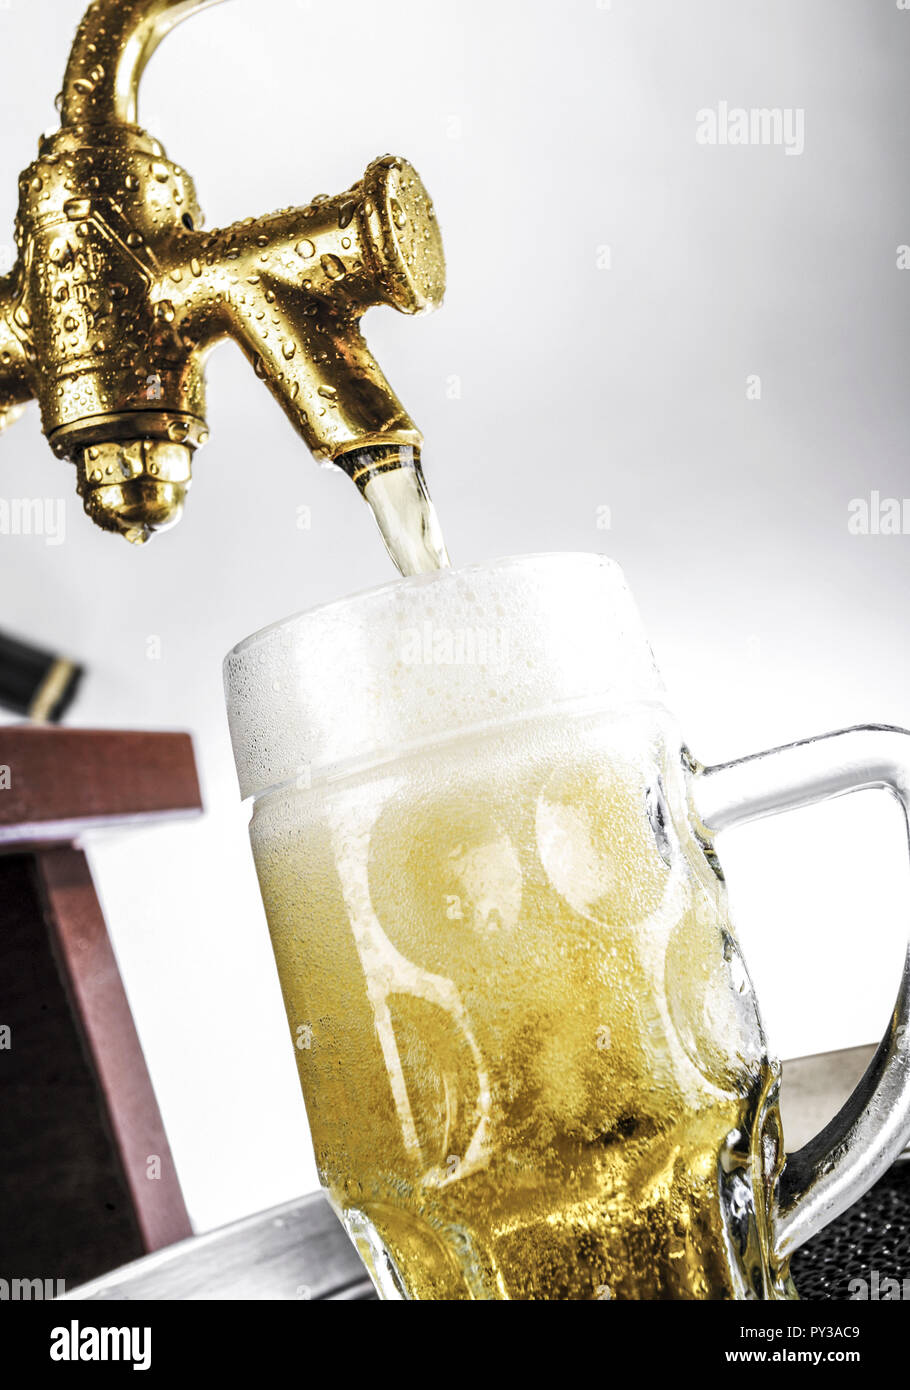 Bier laeuft aus Zapfhahn in Glas Stock Photo - Alamy